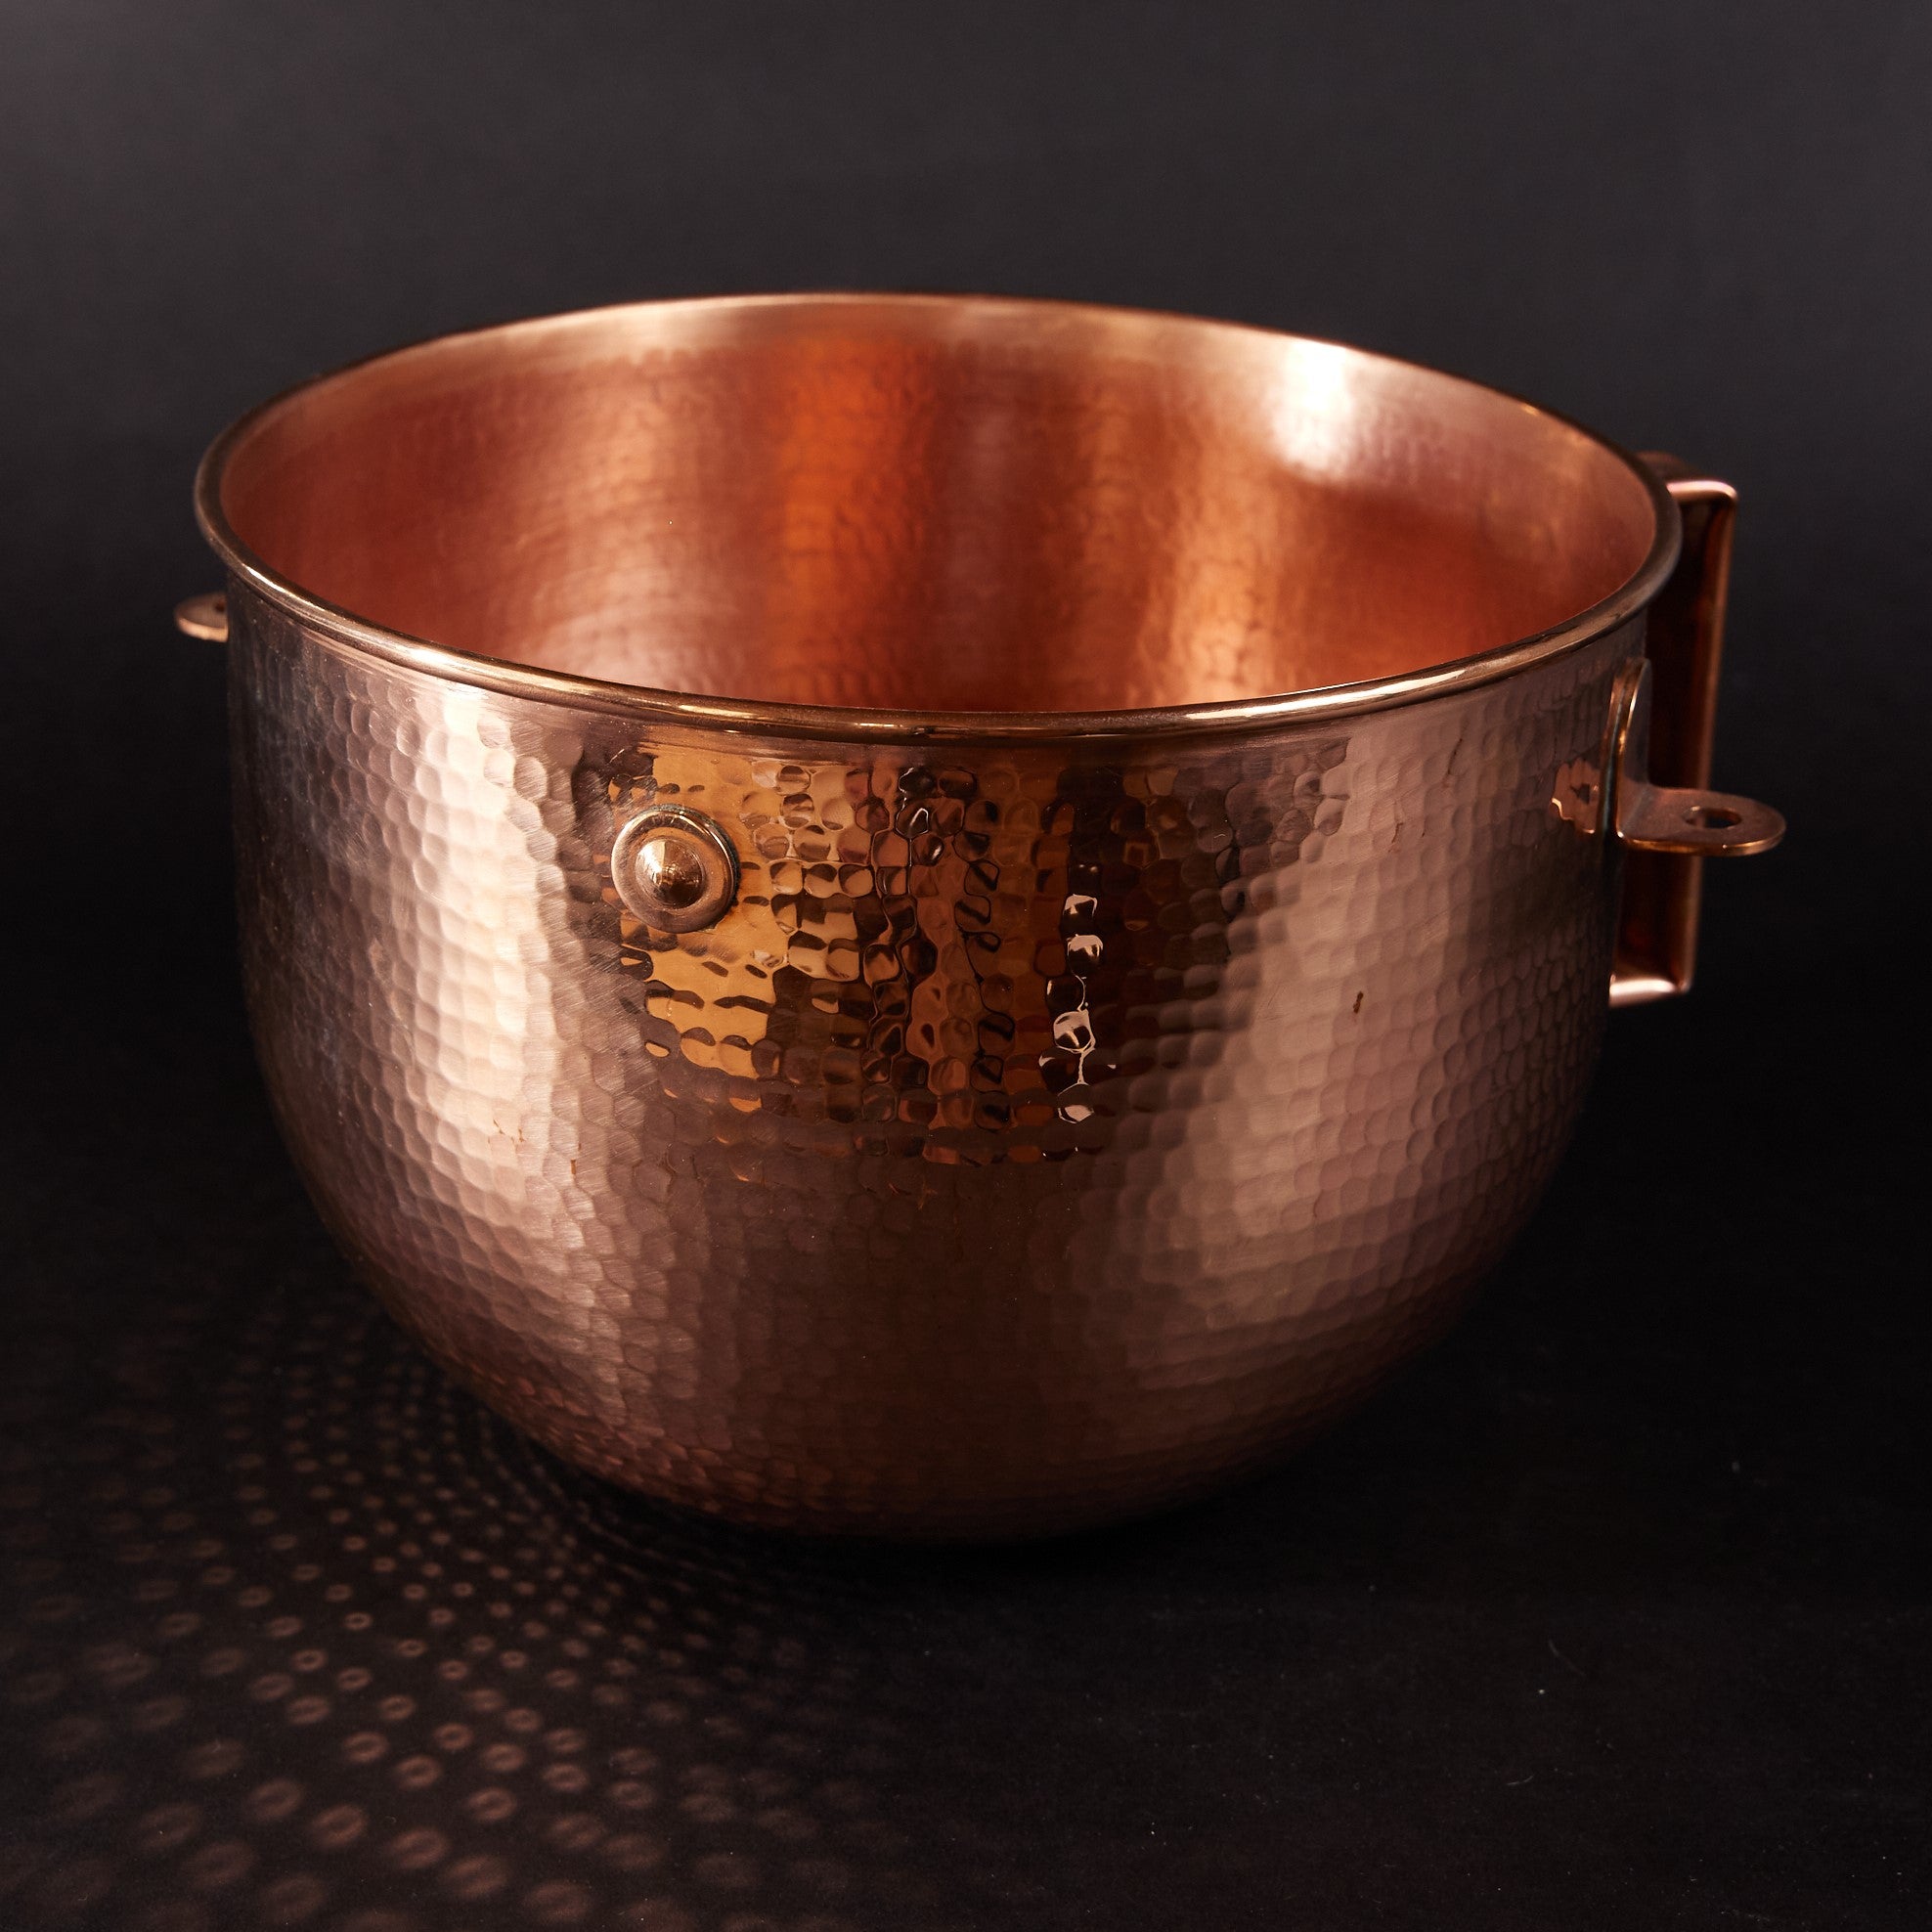 Copper Mixing Bowl for KitchenAid Lift Stand Mixers - fits most 5, 6 and 7 quart Mixer models